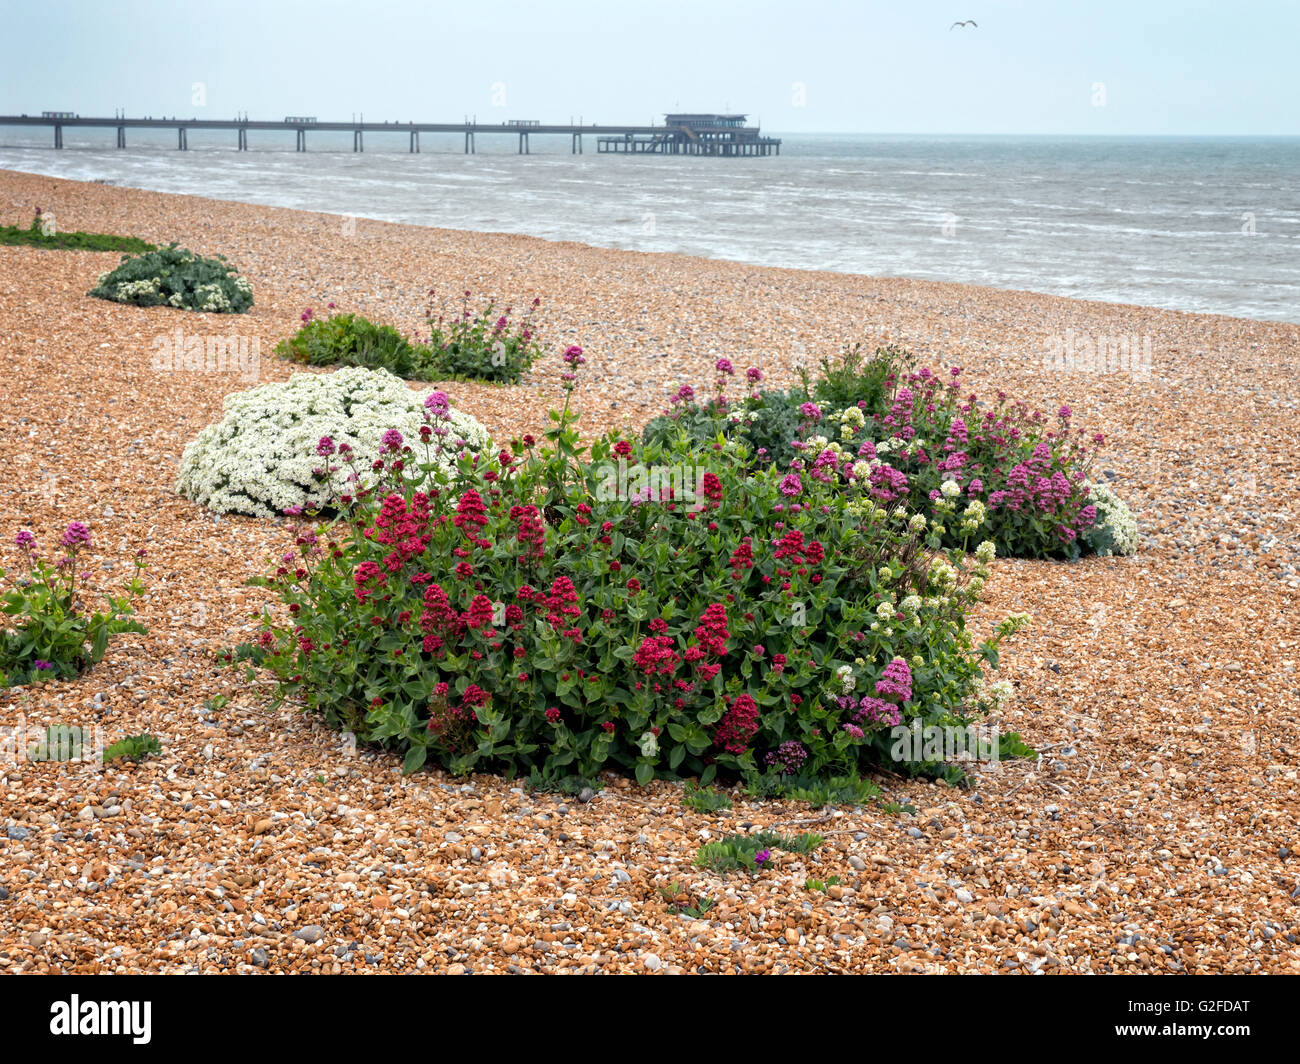 La plage de Deal Kent. Fleurs sauvages en fleurs sur la plage de galets au début de l'été Banque D'Images